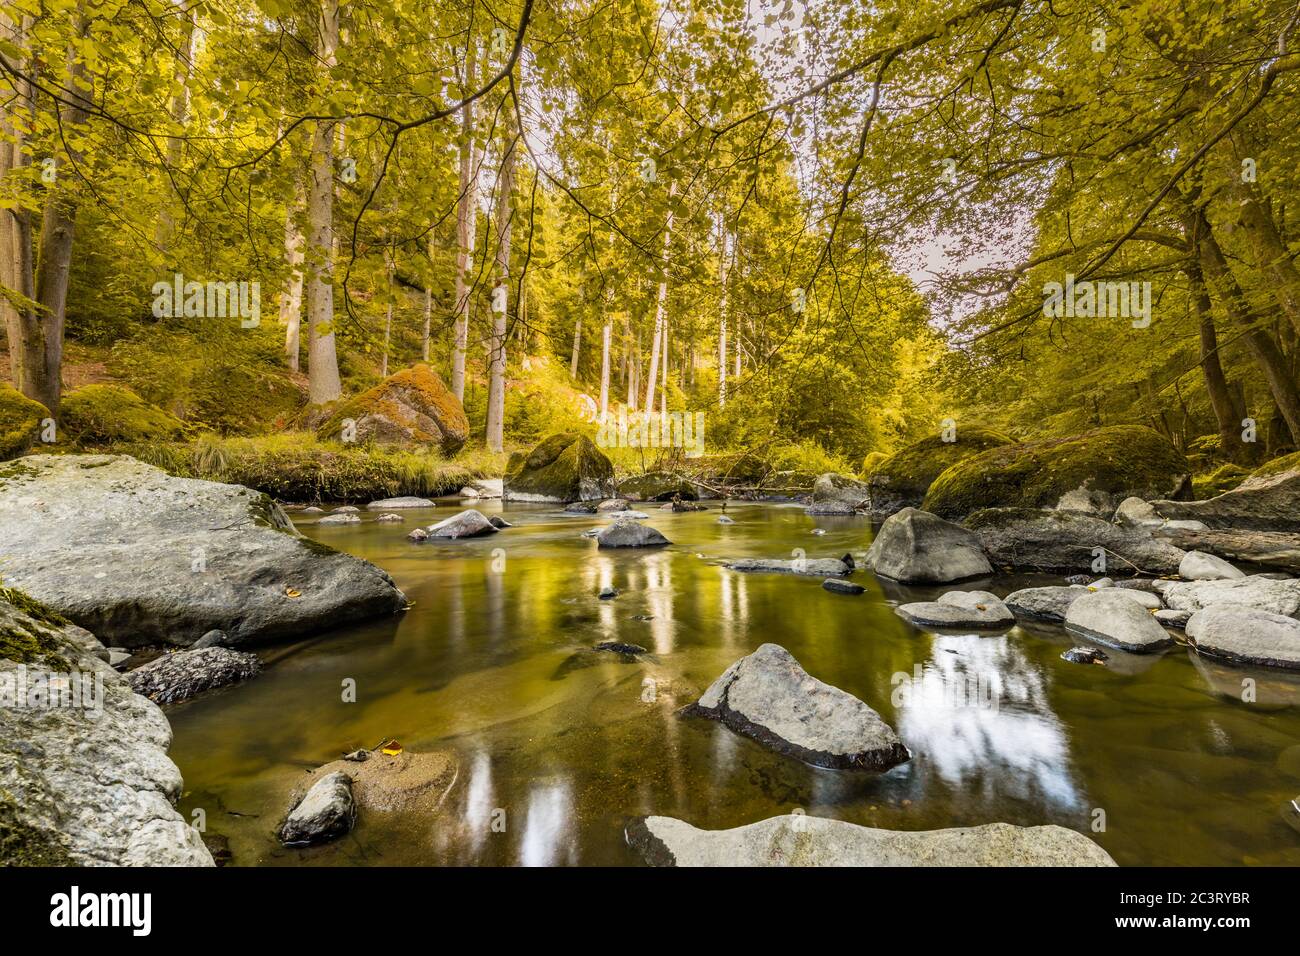 Herbstlicher Wald, mit Moos bewachsene Felsen, abgefallene Blätter. Bergfluss mit Wasserfällen im Herbst. Herbstfarben, ruhige Naturlandschaft Stockfoto